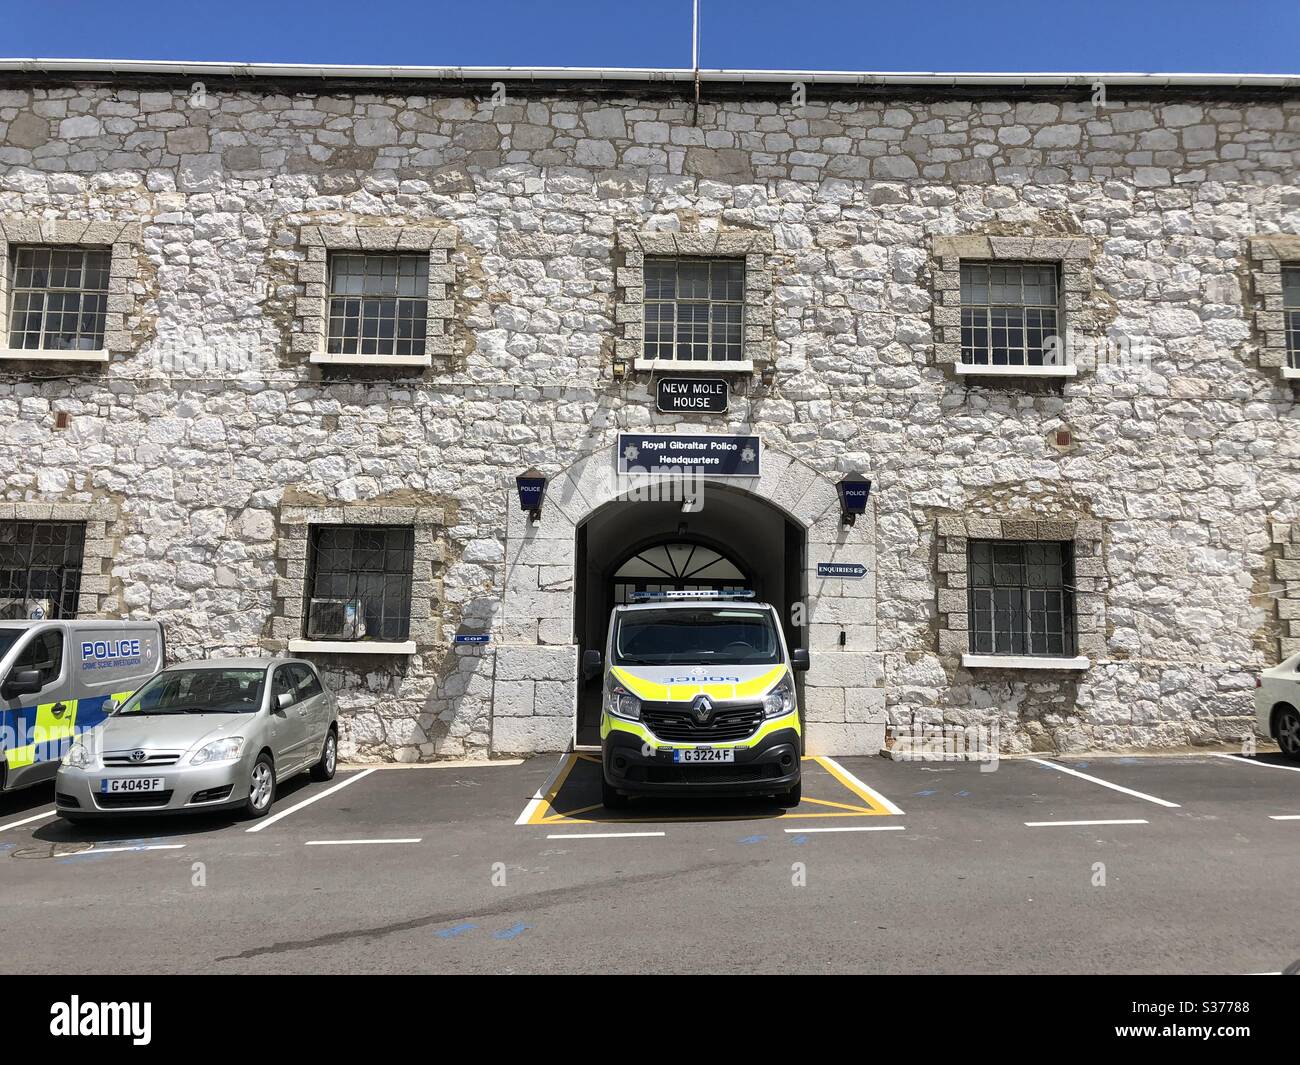 New Mole House, siège de la police royale de Gibraltar Banque D'Images